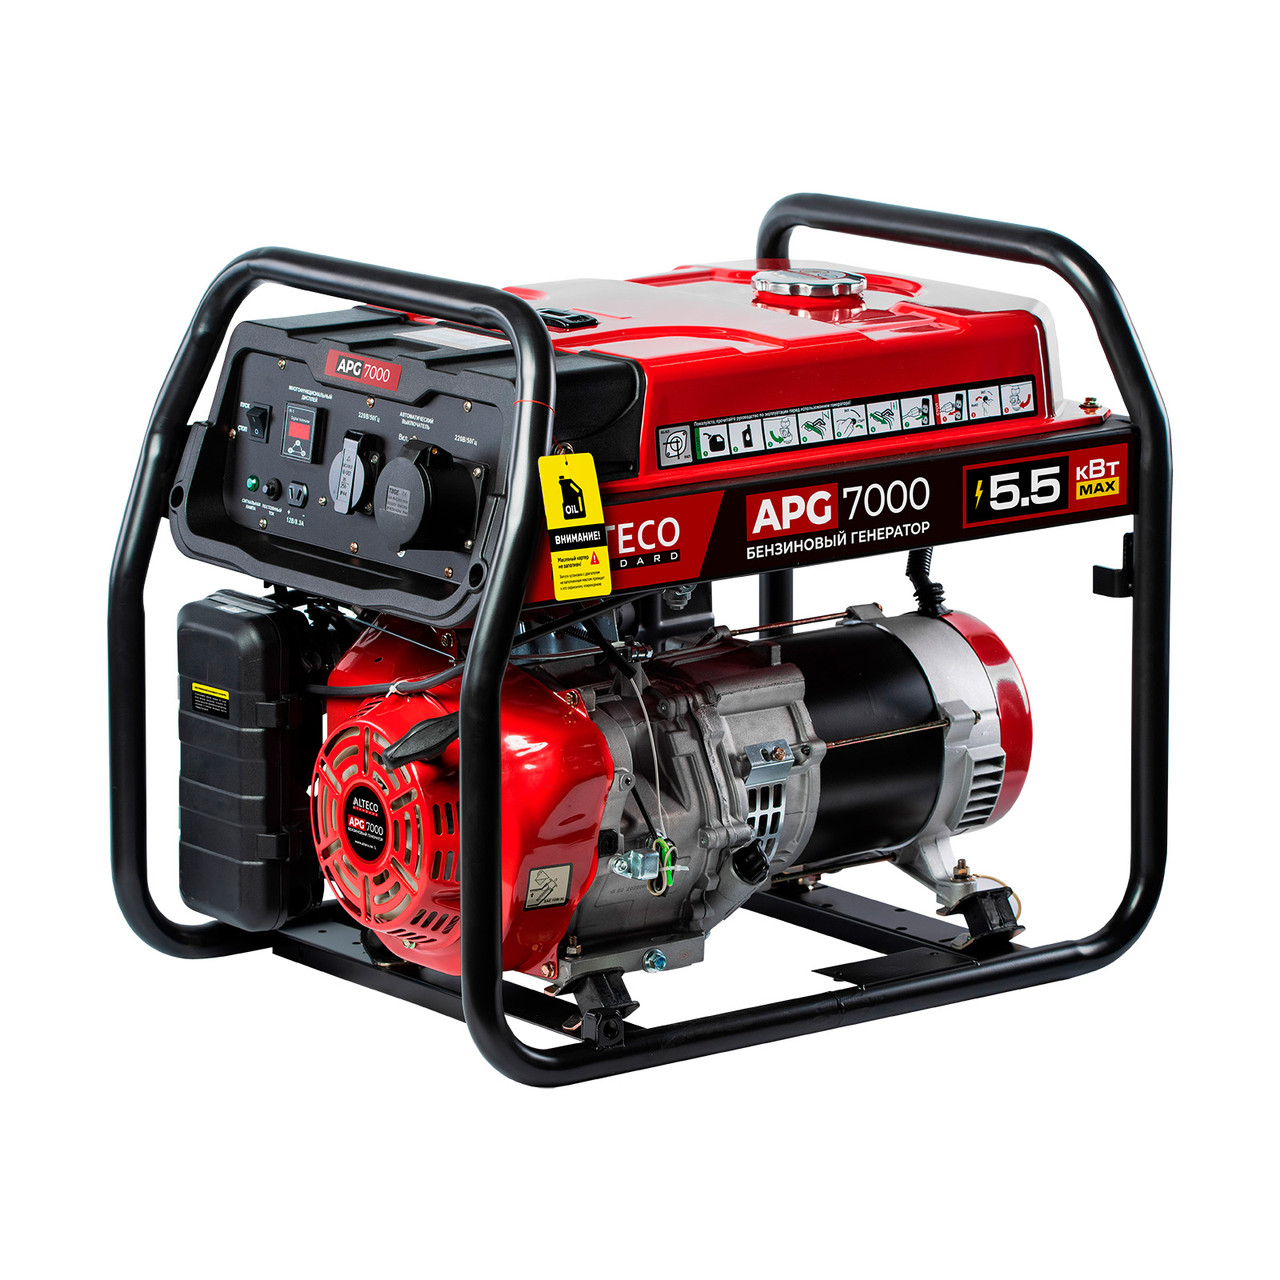 Бензиновый генератор ALTECO APG 7000 (N) 21530 (3.2 кВт, 220 В, ручной старт, бак 15 л)